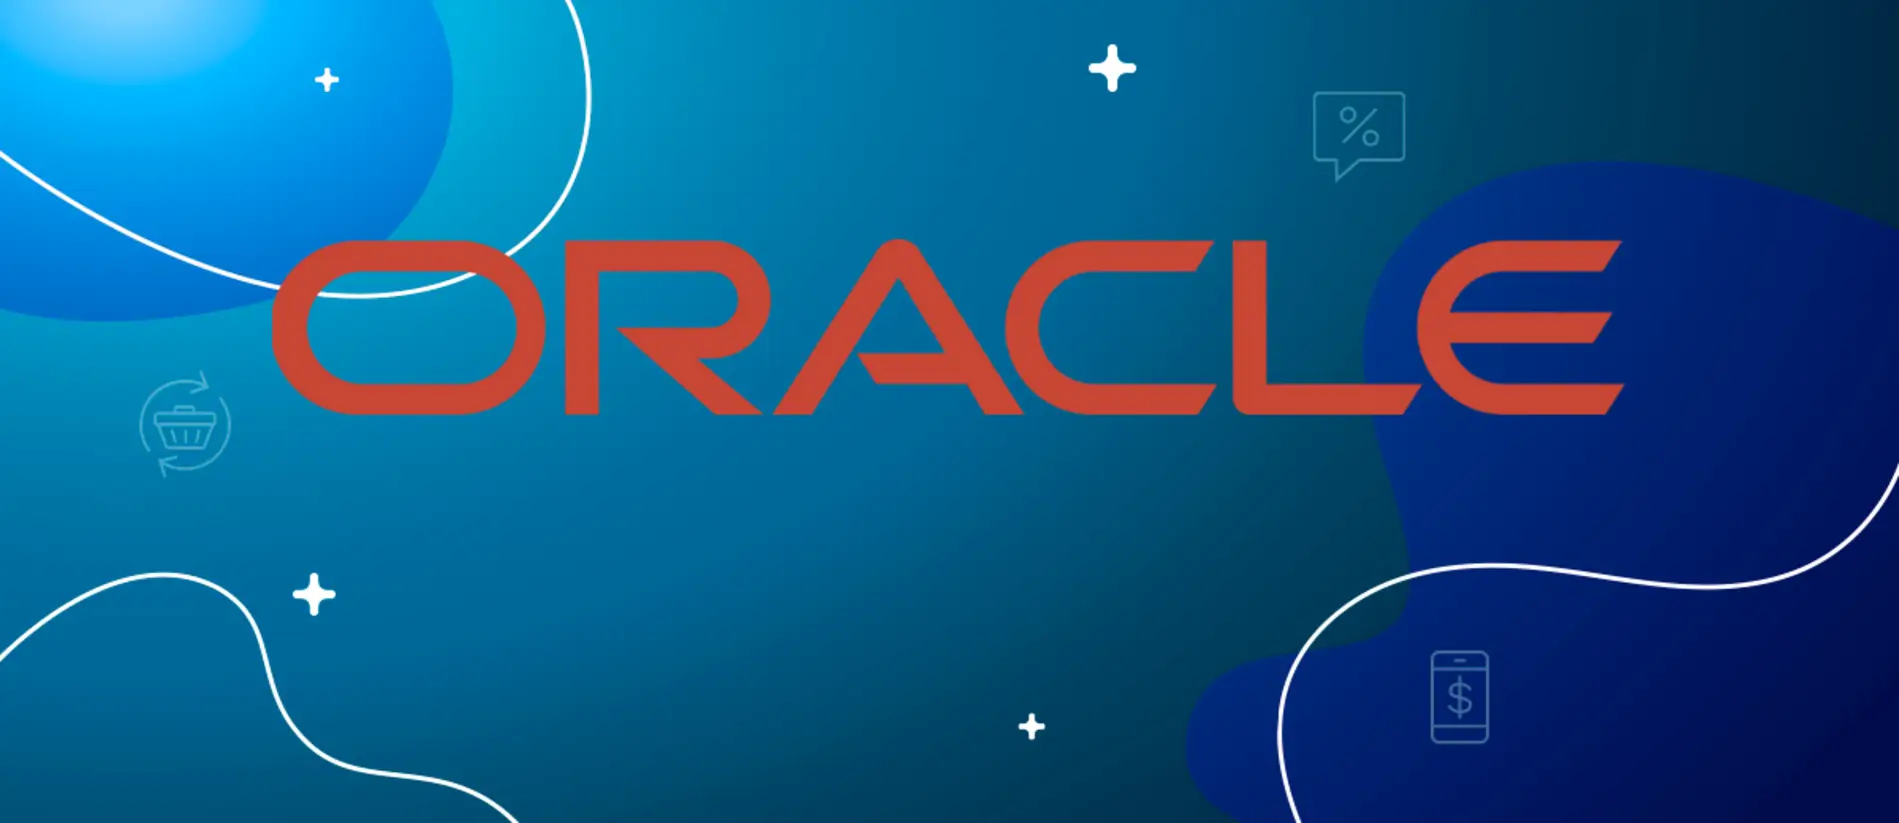 Oracle збільшує прибуток завдяки стратегічним угодам та розширенню хмарних сервісів